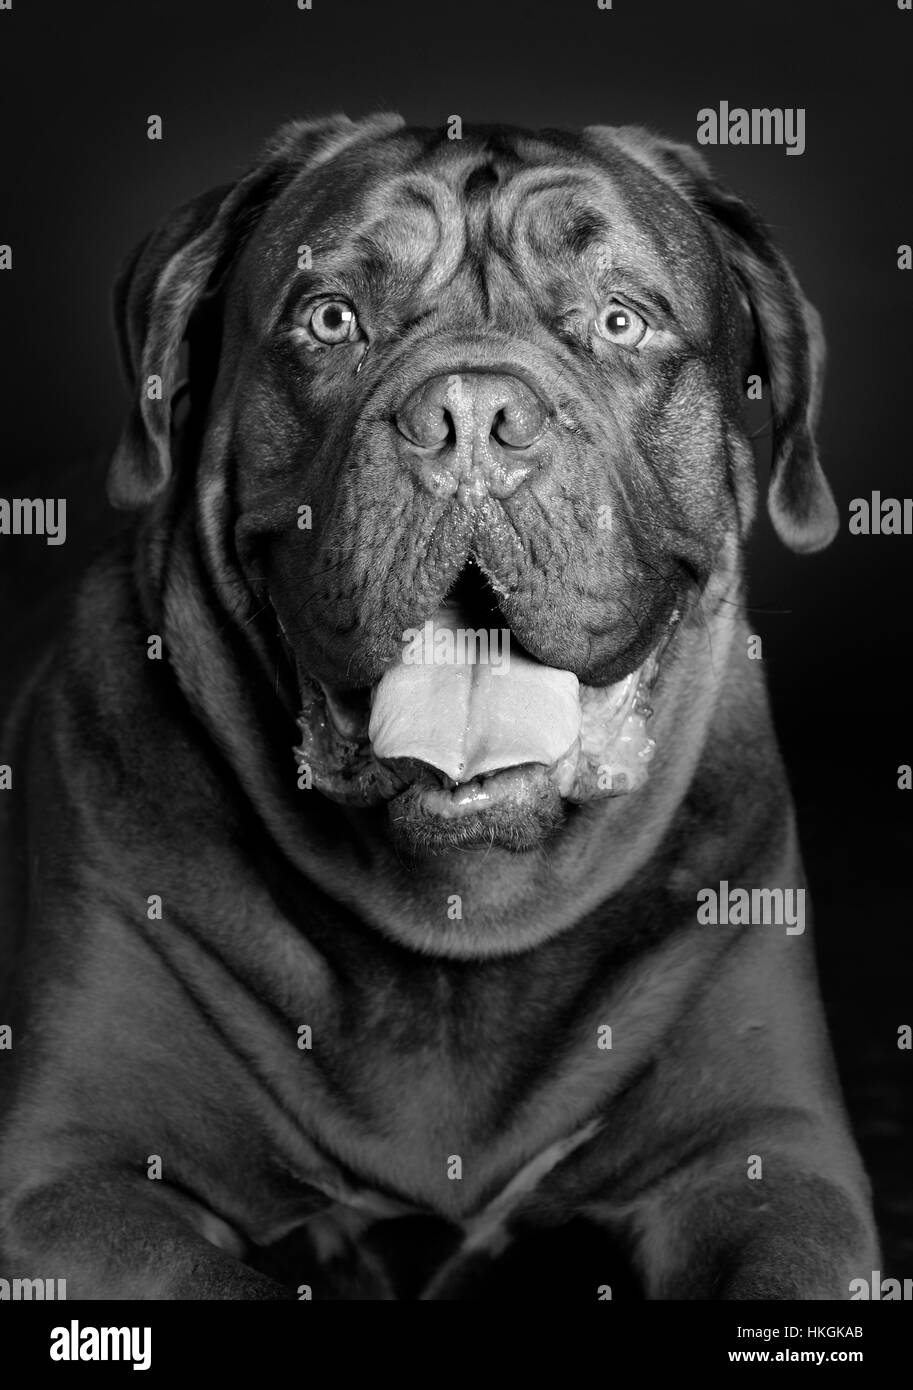 Dogue de Bordeaux dog portrait in studio Stock Photo